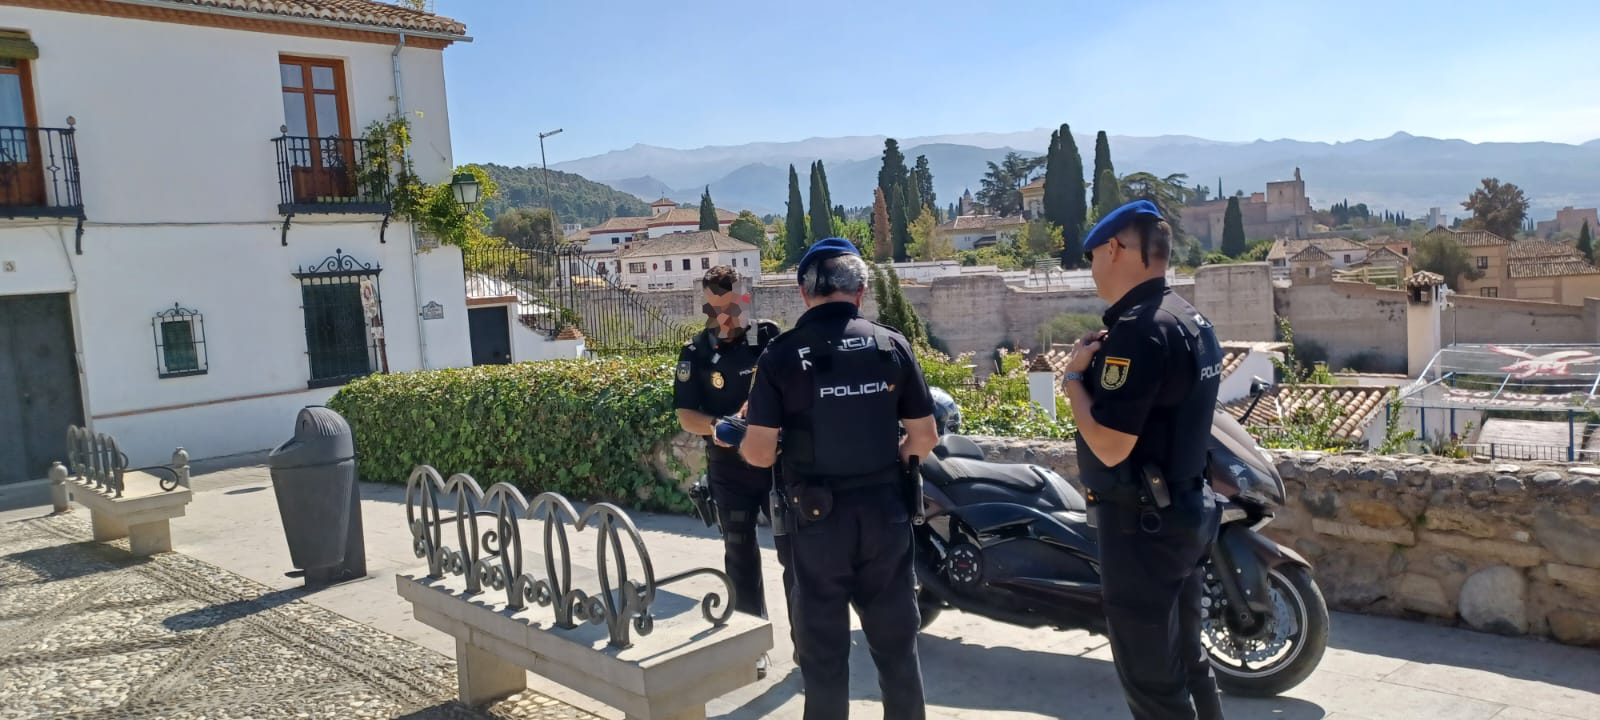 Tres agentes de la Policía Nacional, junto a una moto oficial,  en un lugar elevado de la ciudad.